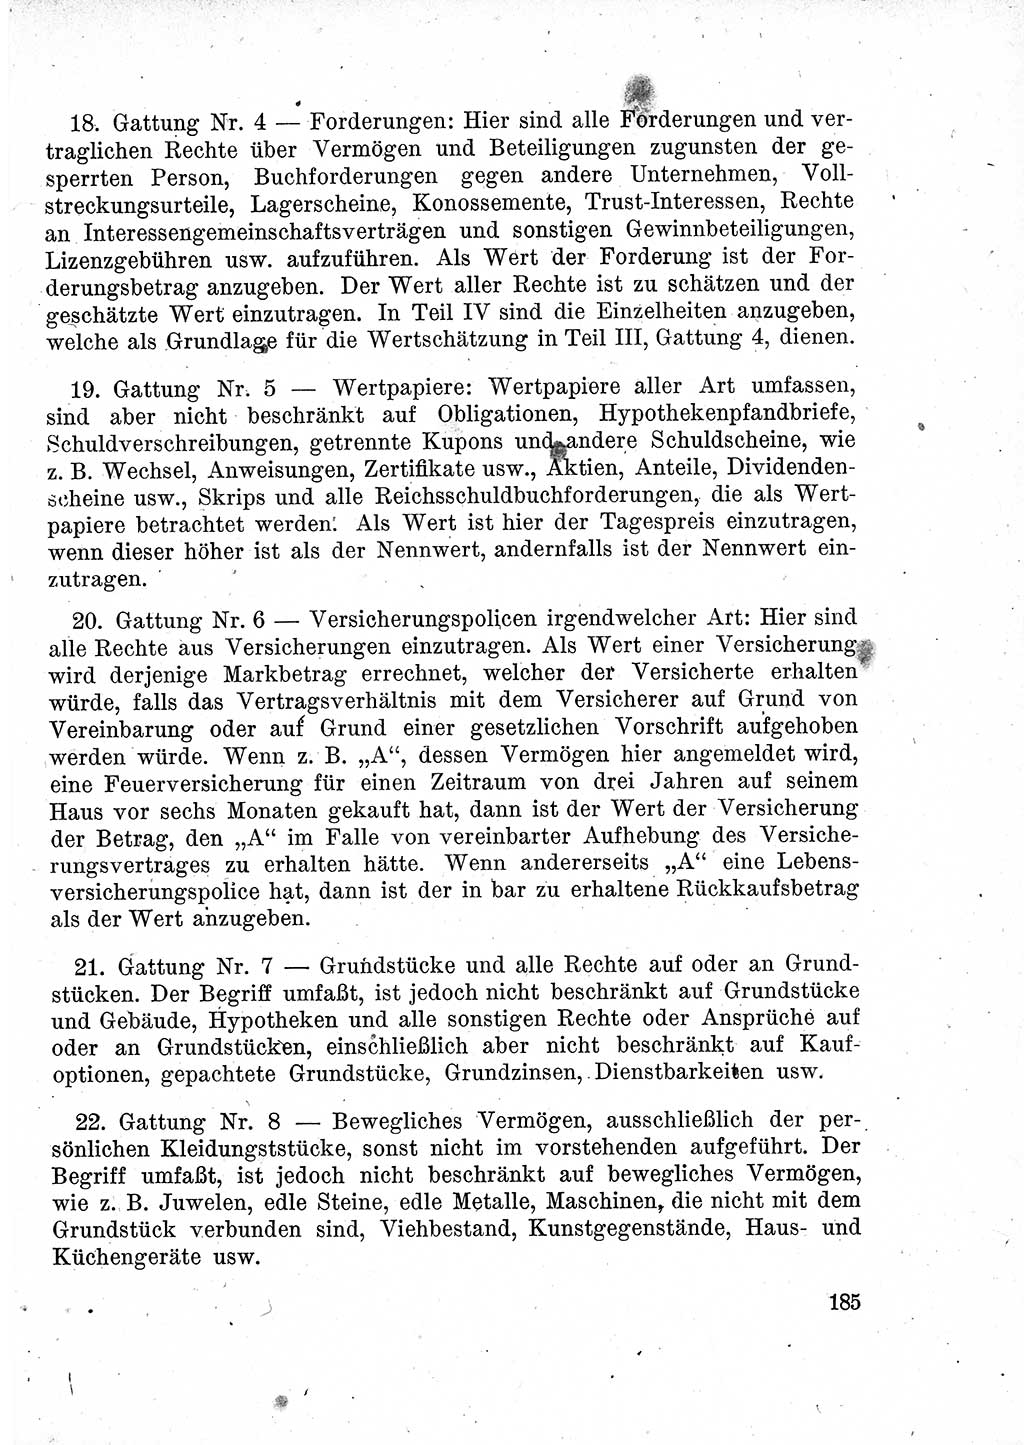 Das Recht der Besatzungsmacht (Deutschland), Proklamationen, Deklerationen, Verordnungen, Gesetze und Bekanntmachungen 1947, Seite 185 (R. Bes. Dtl. 1947, S. 185)